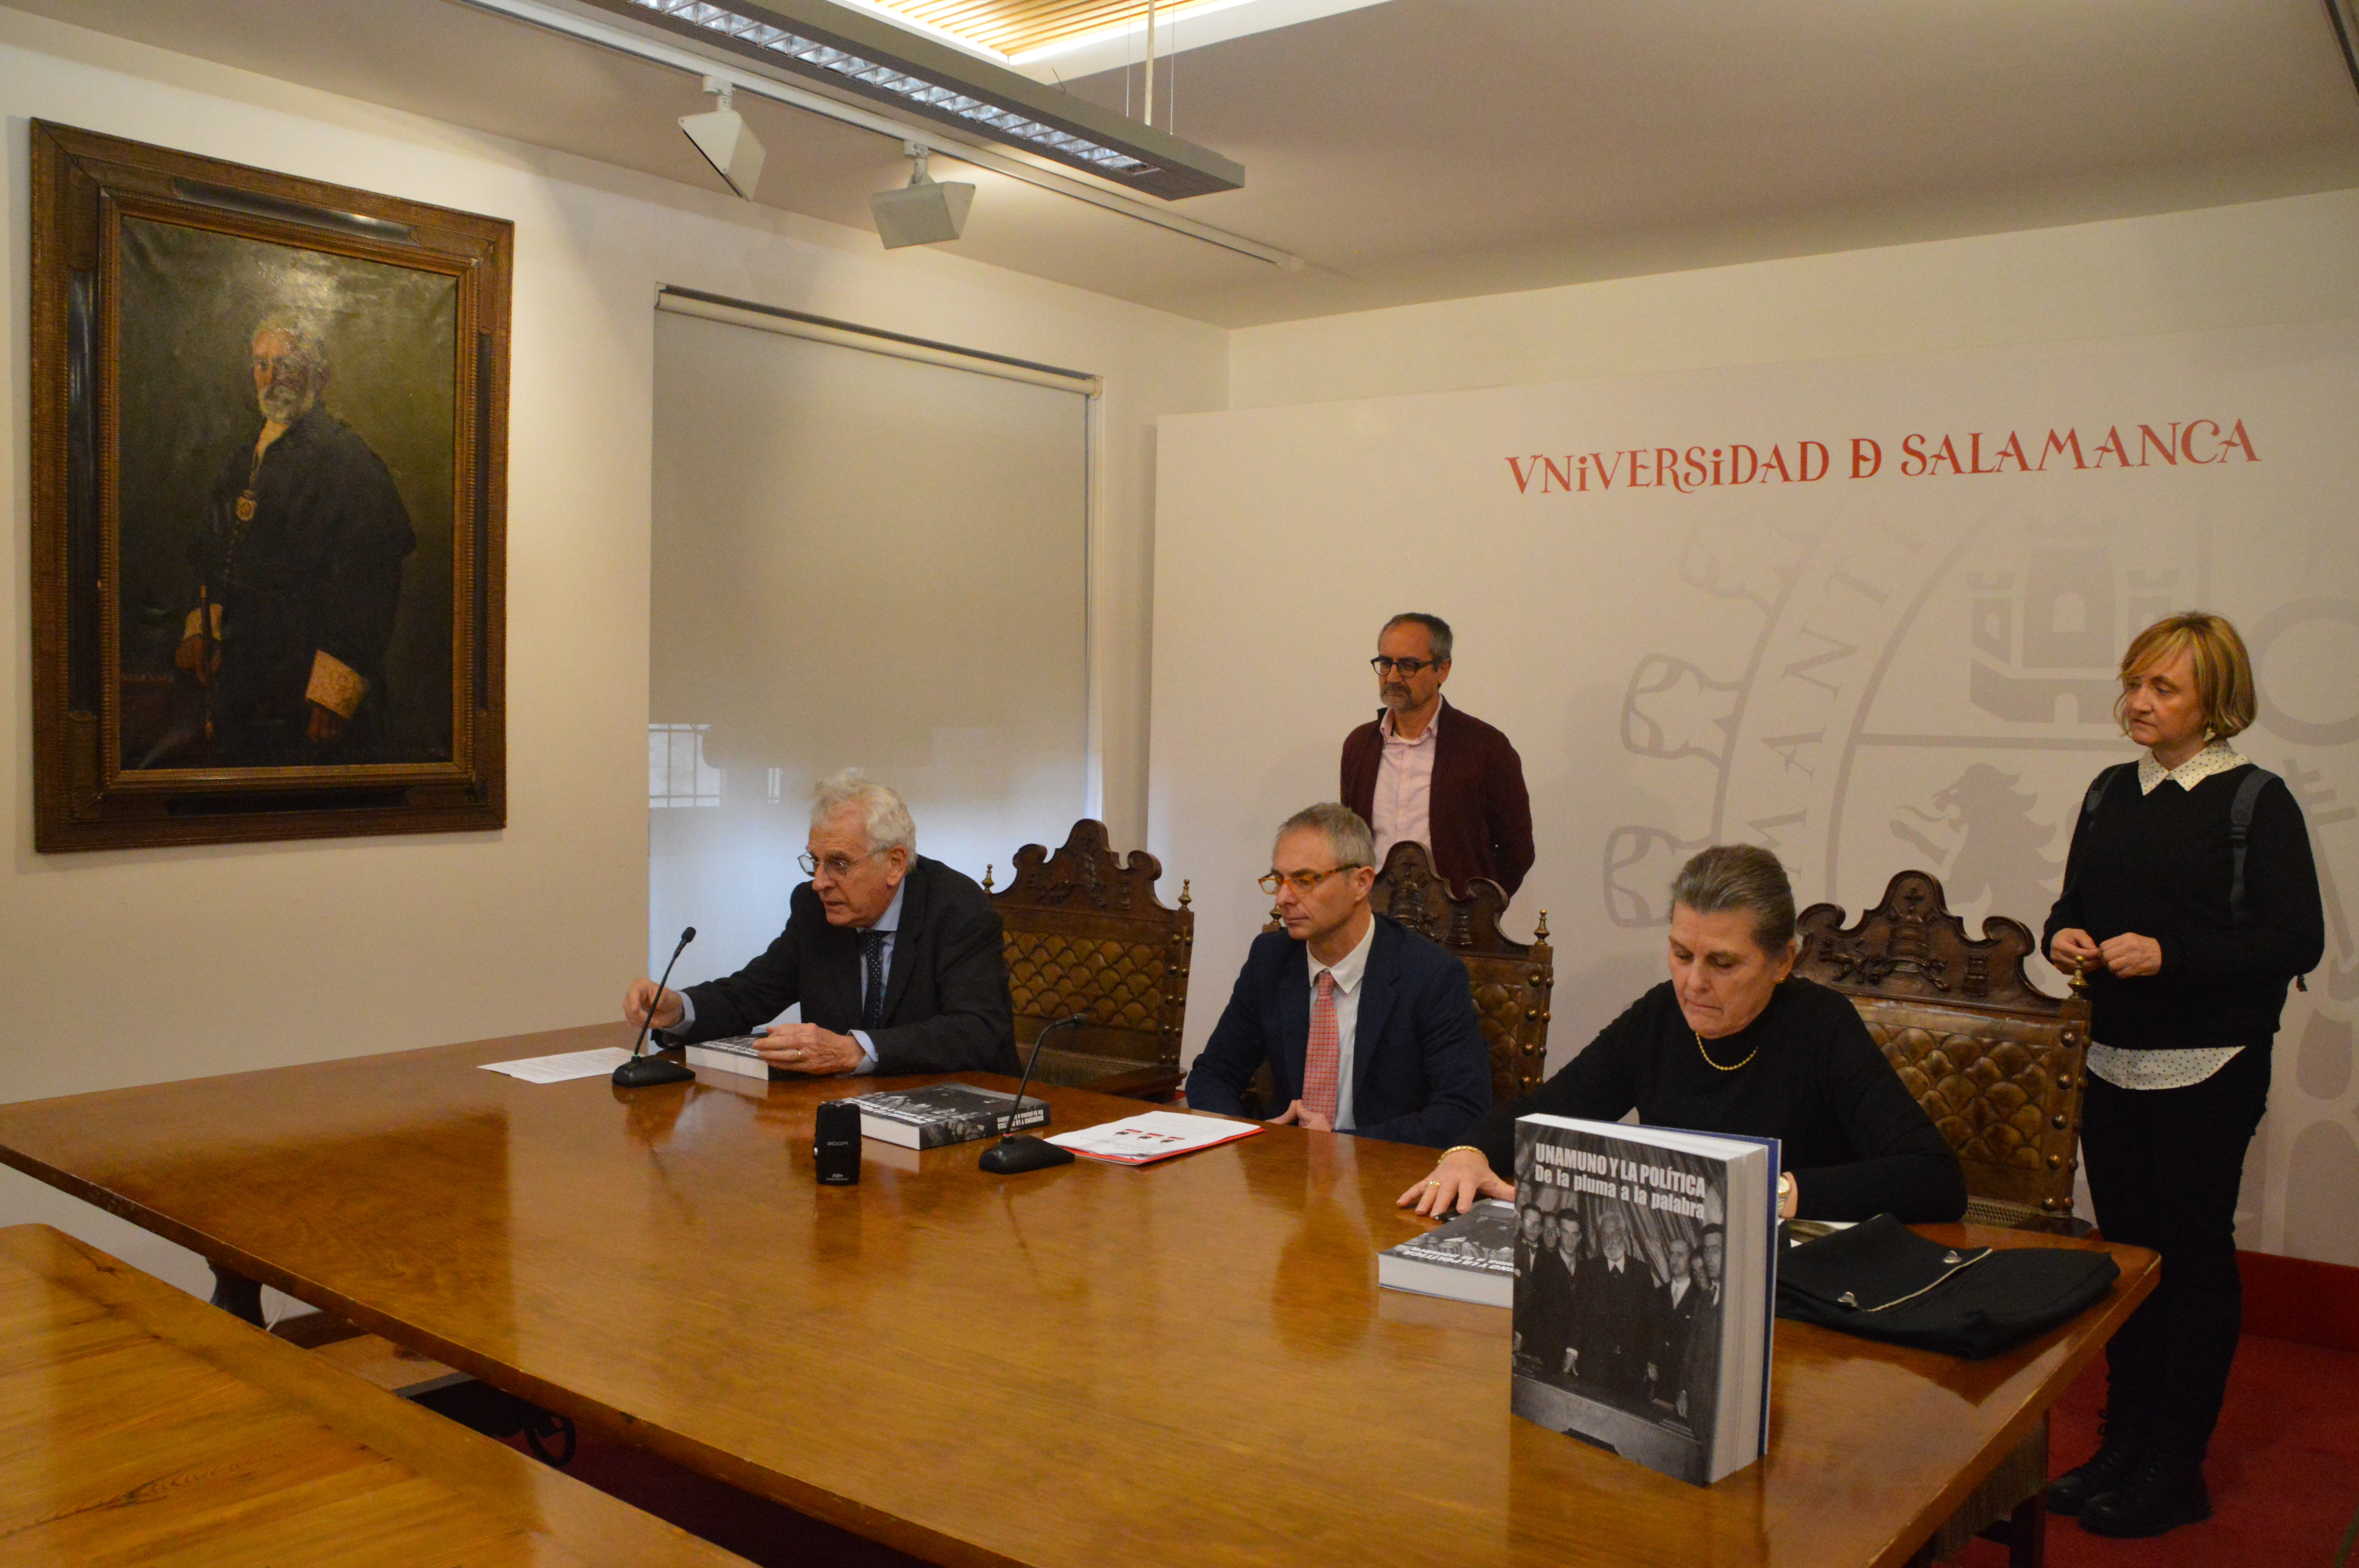 La Universidad de Salamanca reúne en el libro seis décadas del pensamiento político de Unamuno